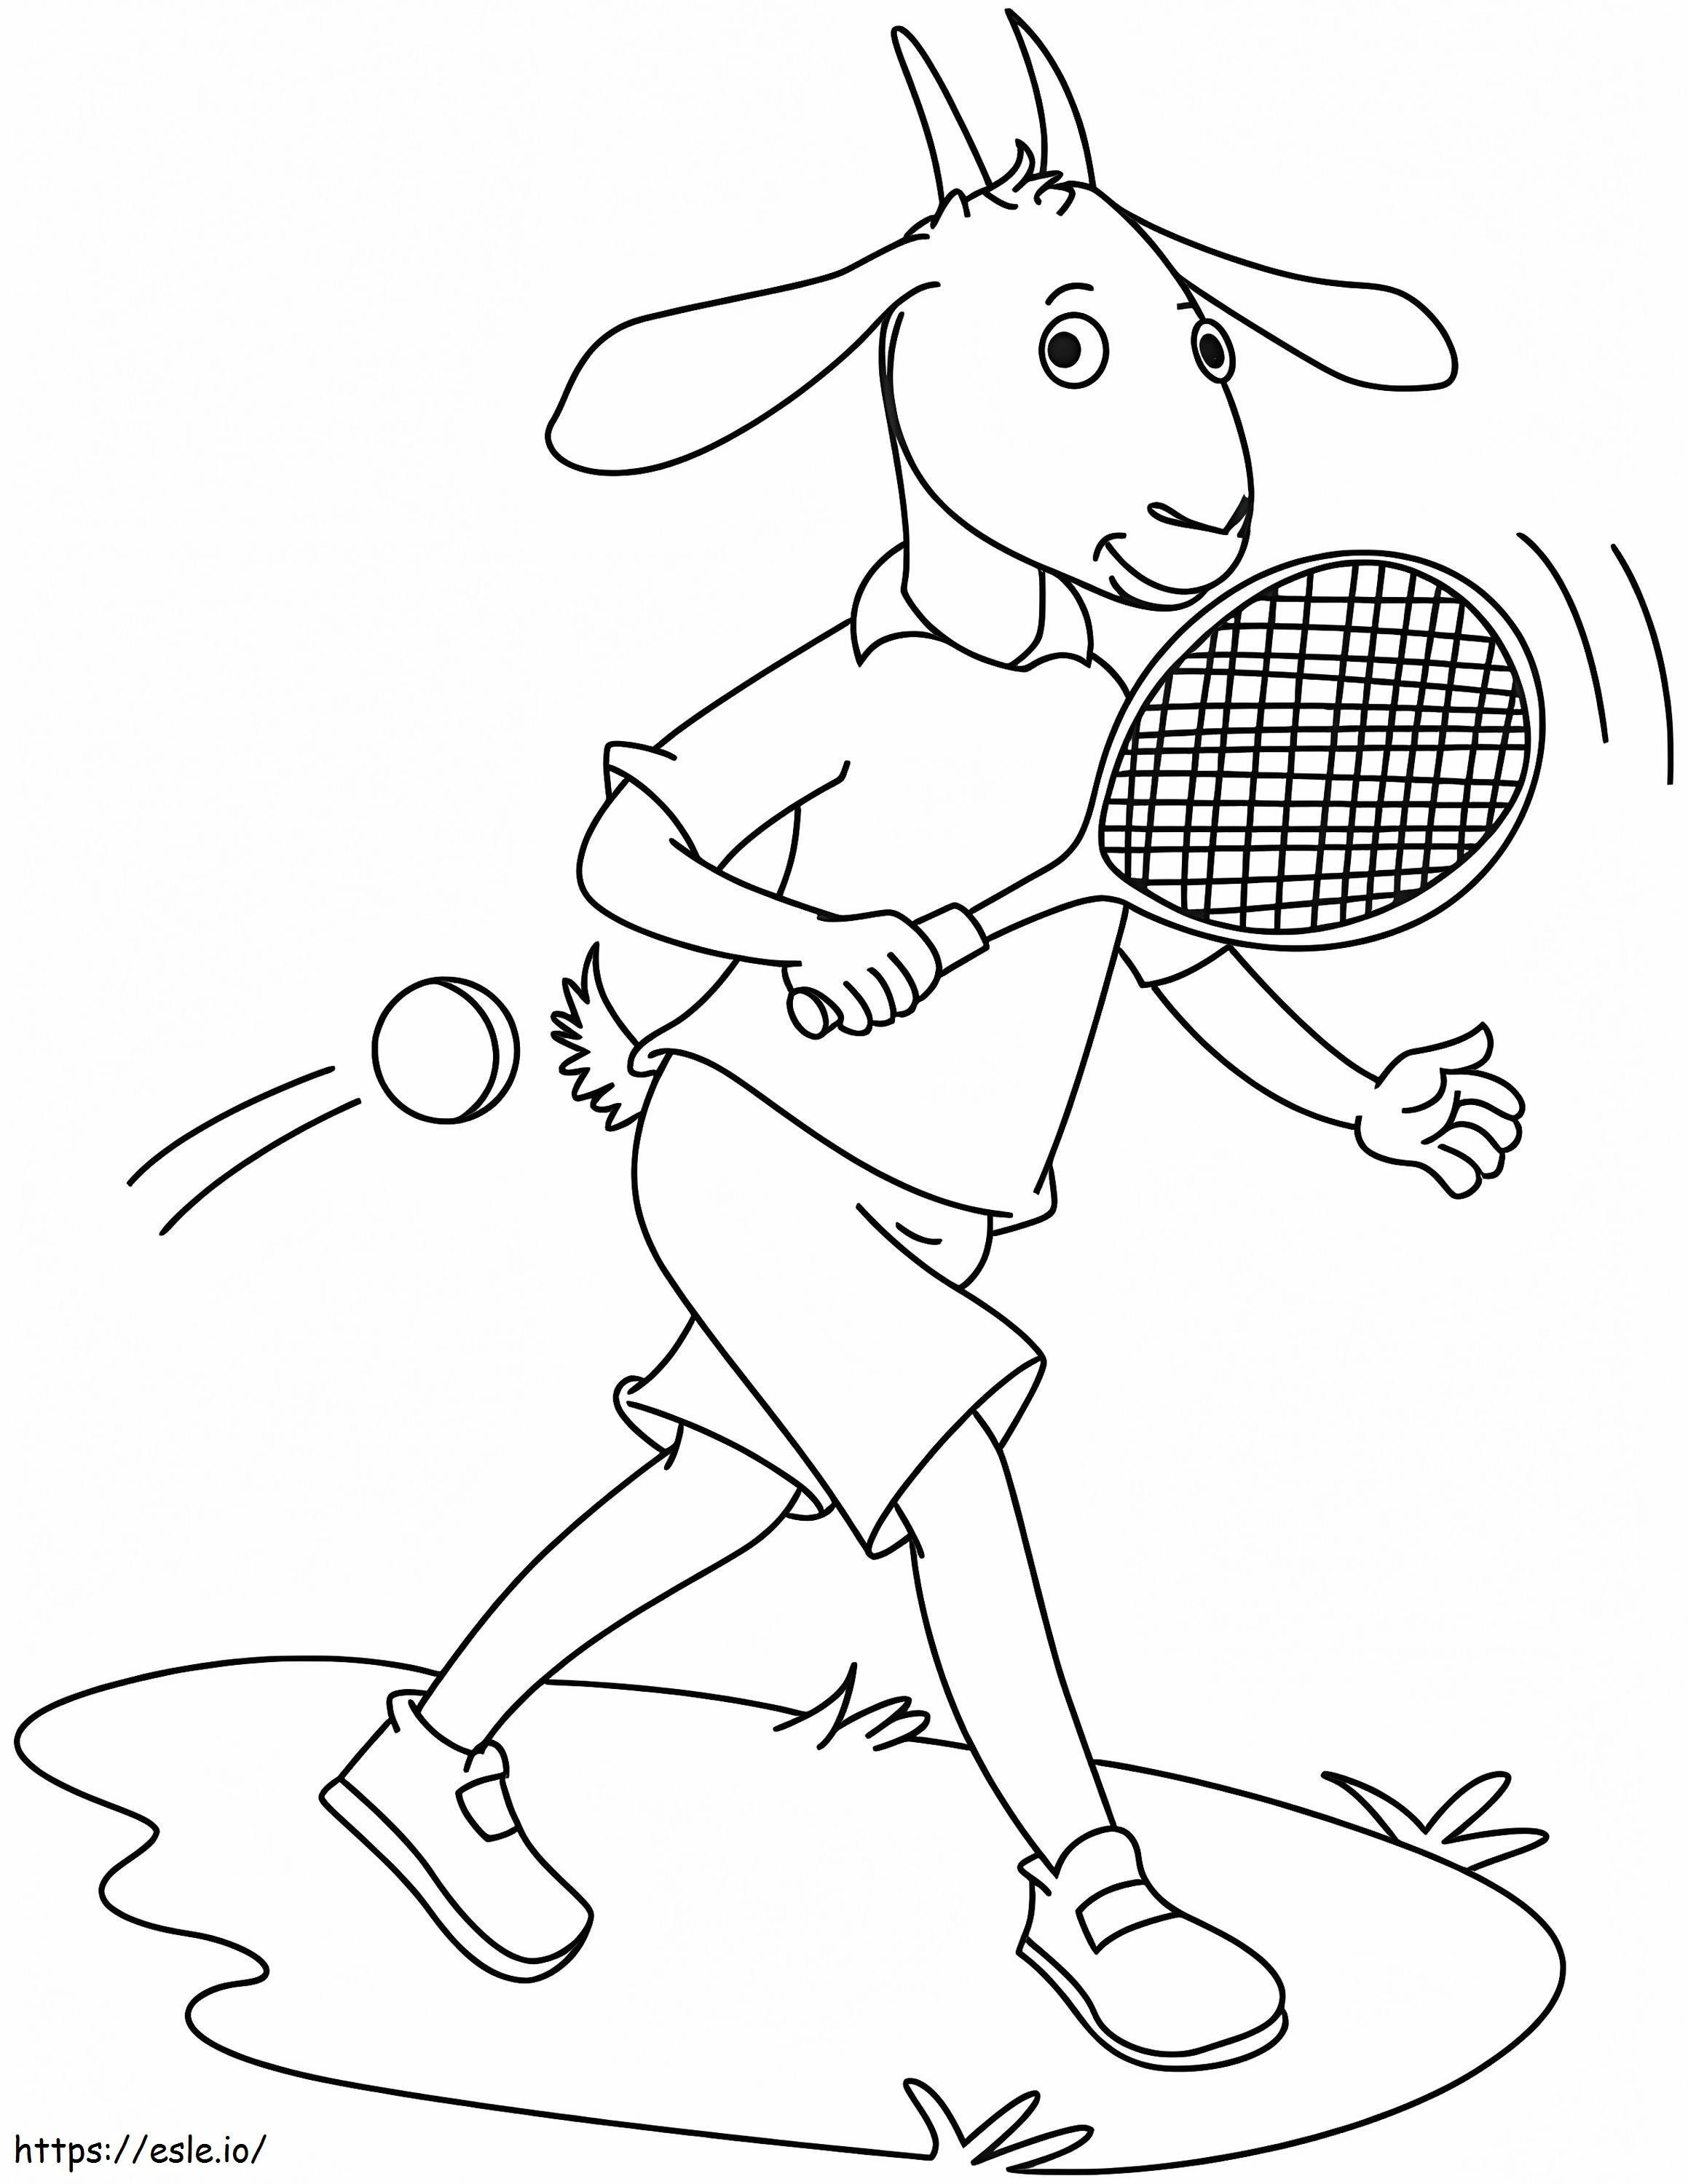 Ziege spielt Tennis ausmalbilder